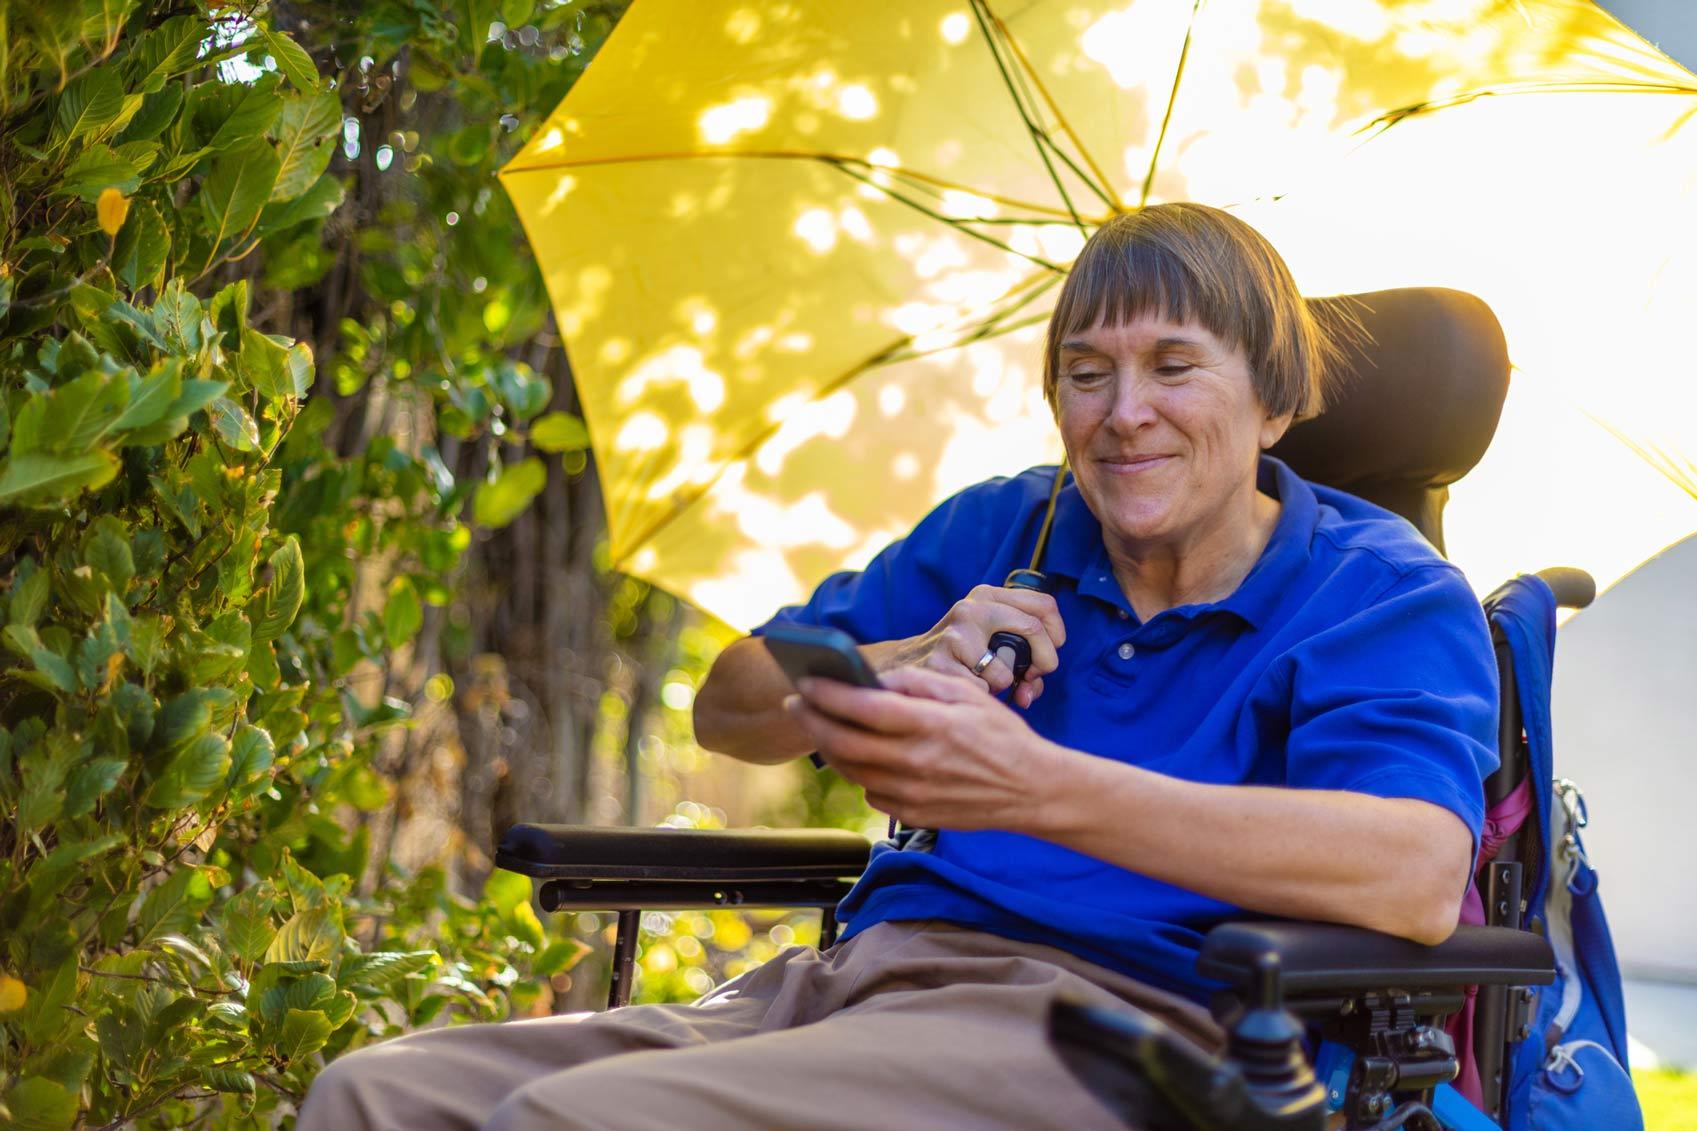 Frau mit einer körperlichen Behinderung durch Multiple Sklerose sitzt im Rollstuhl